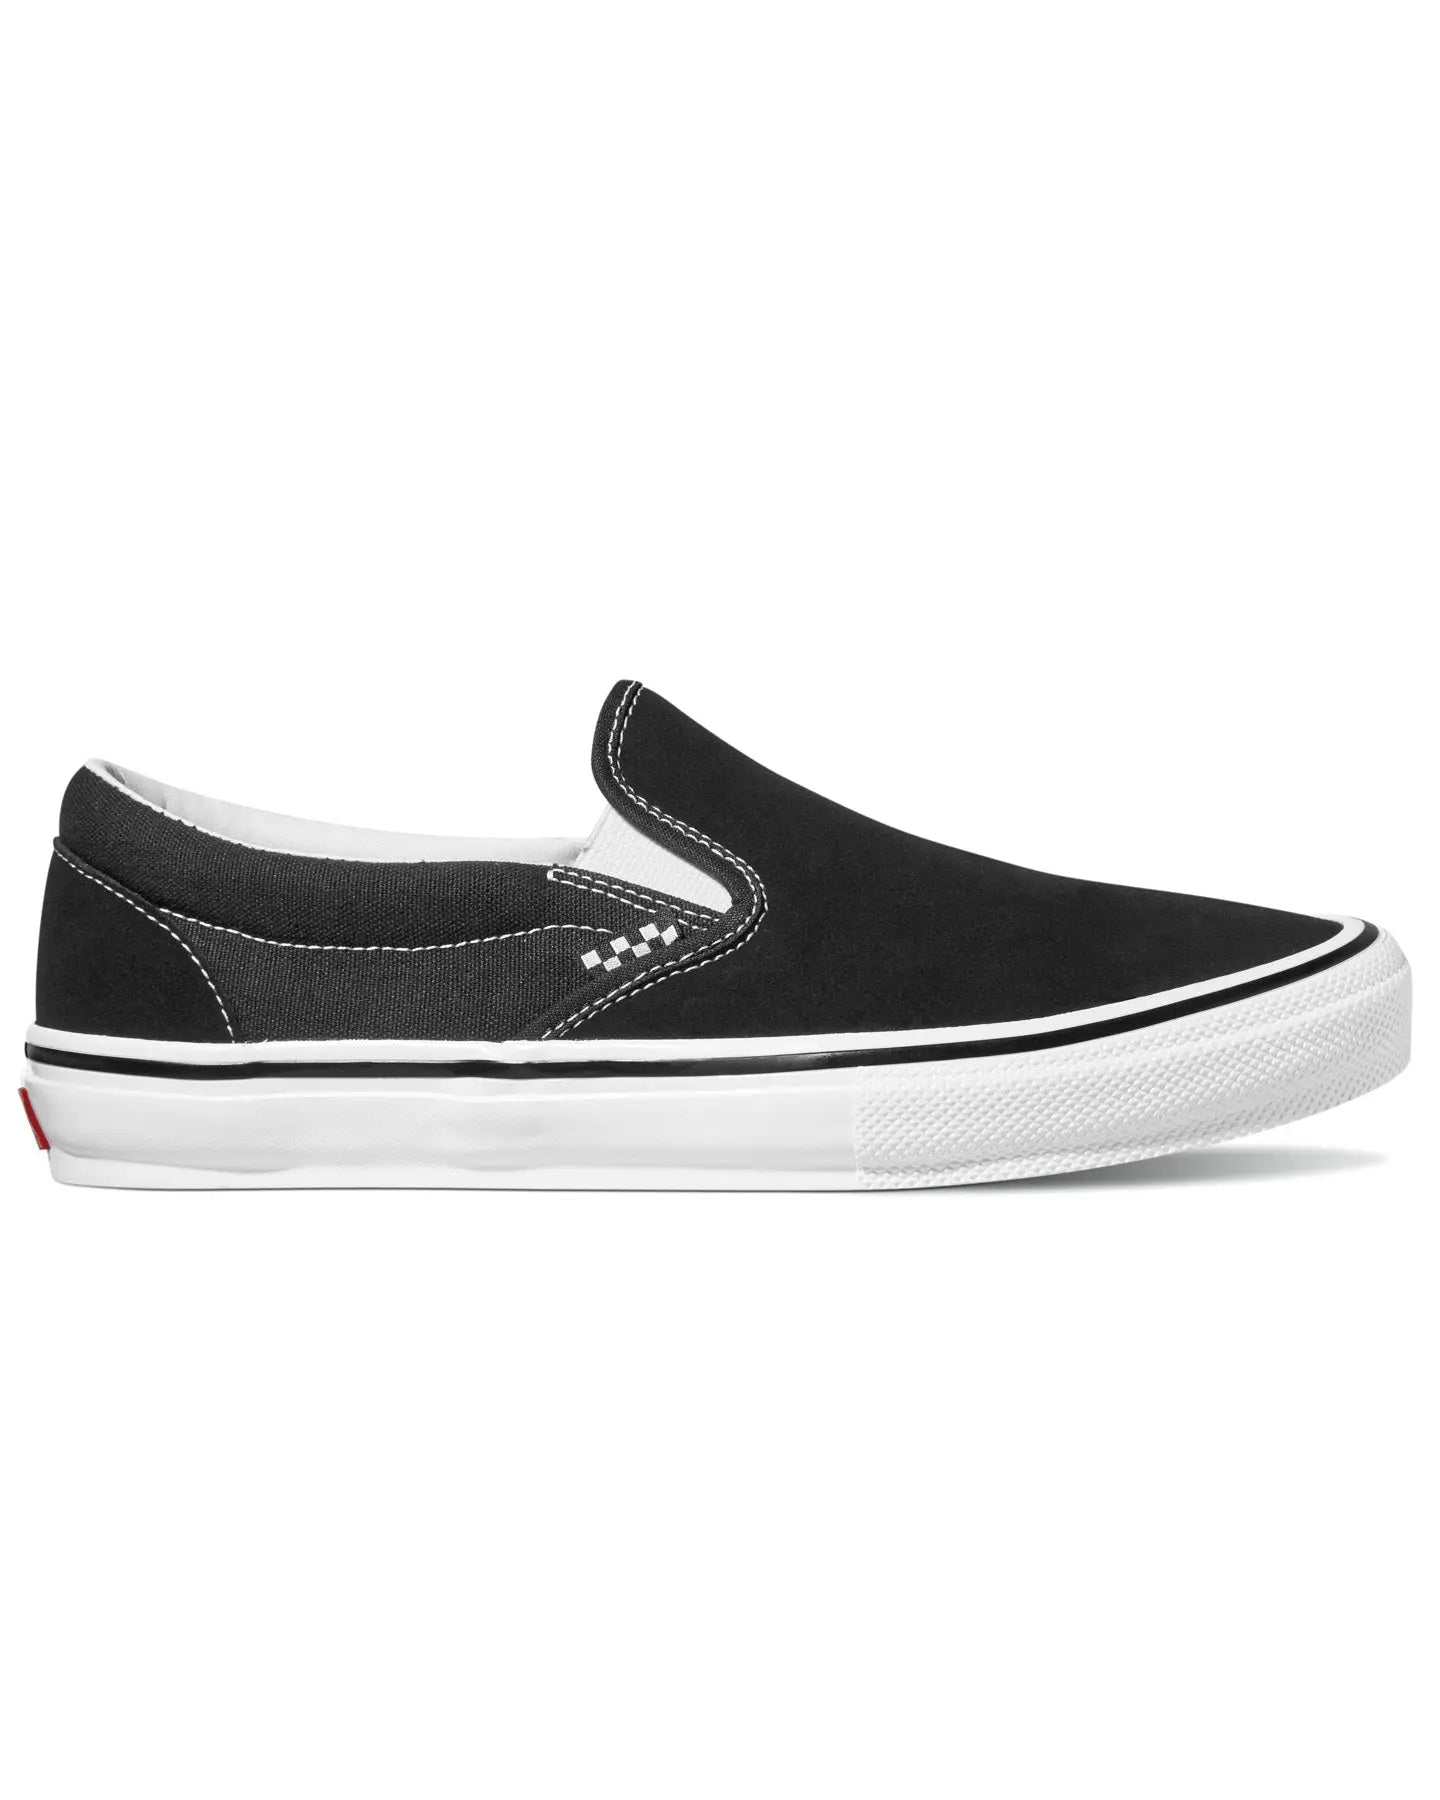 Vans Skate Slip-On - Black / White Footwear